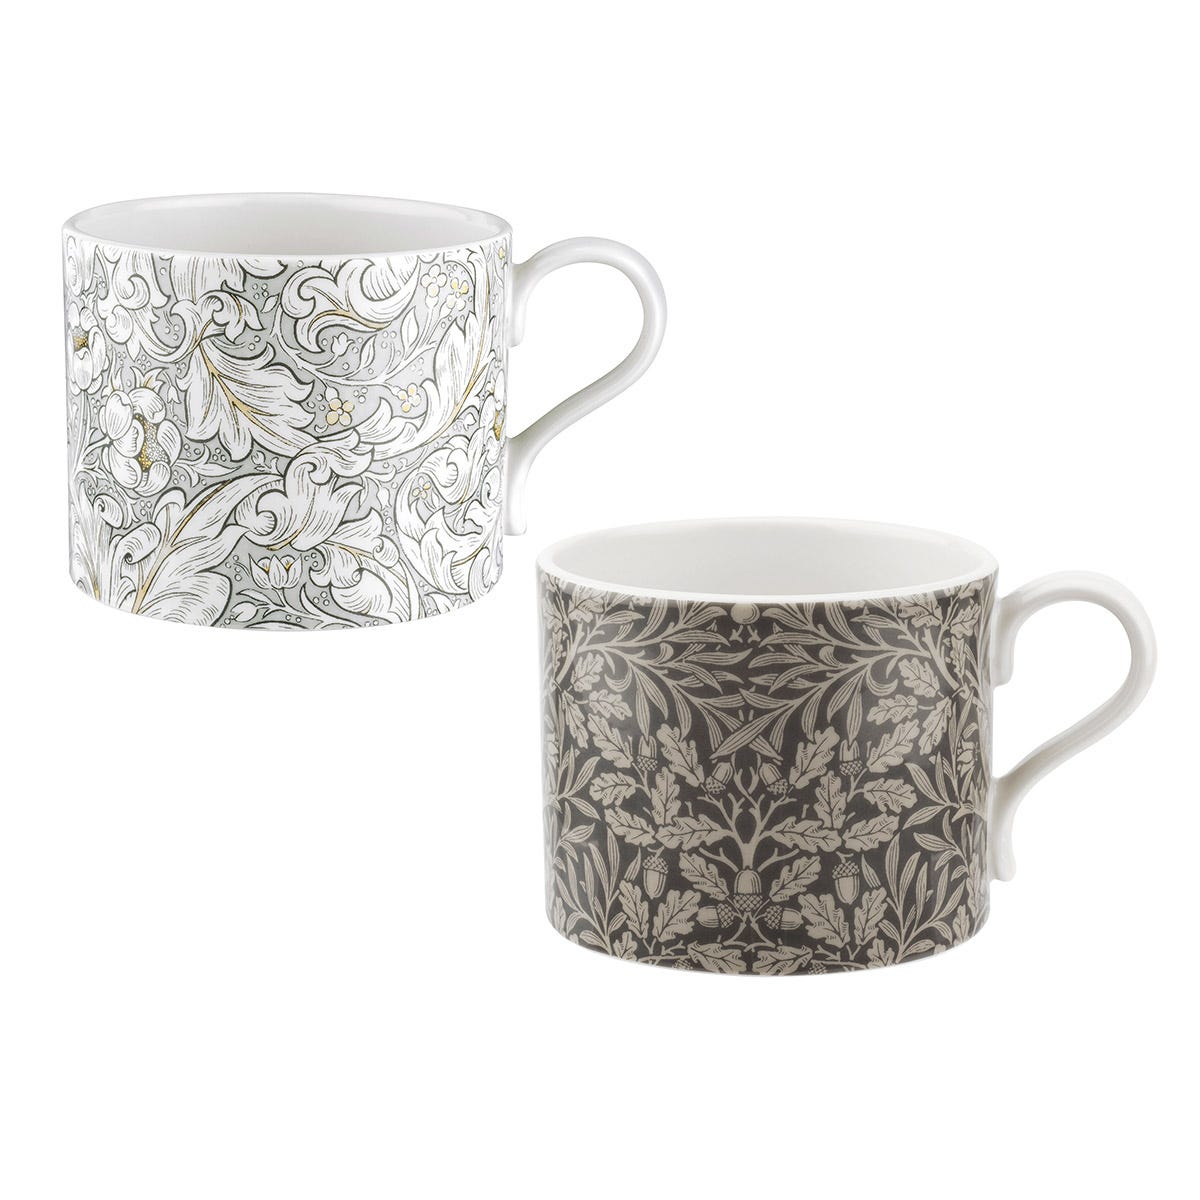 Pure Morris Bachelors & Acorn Set of 2 Mugs